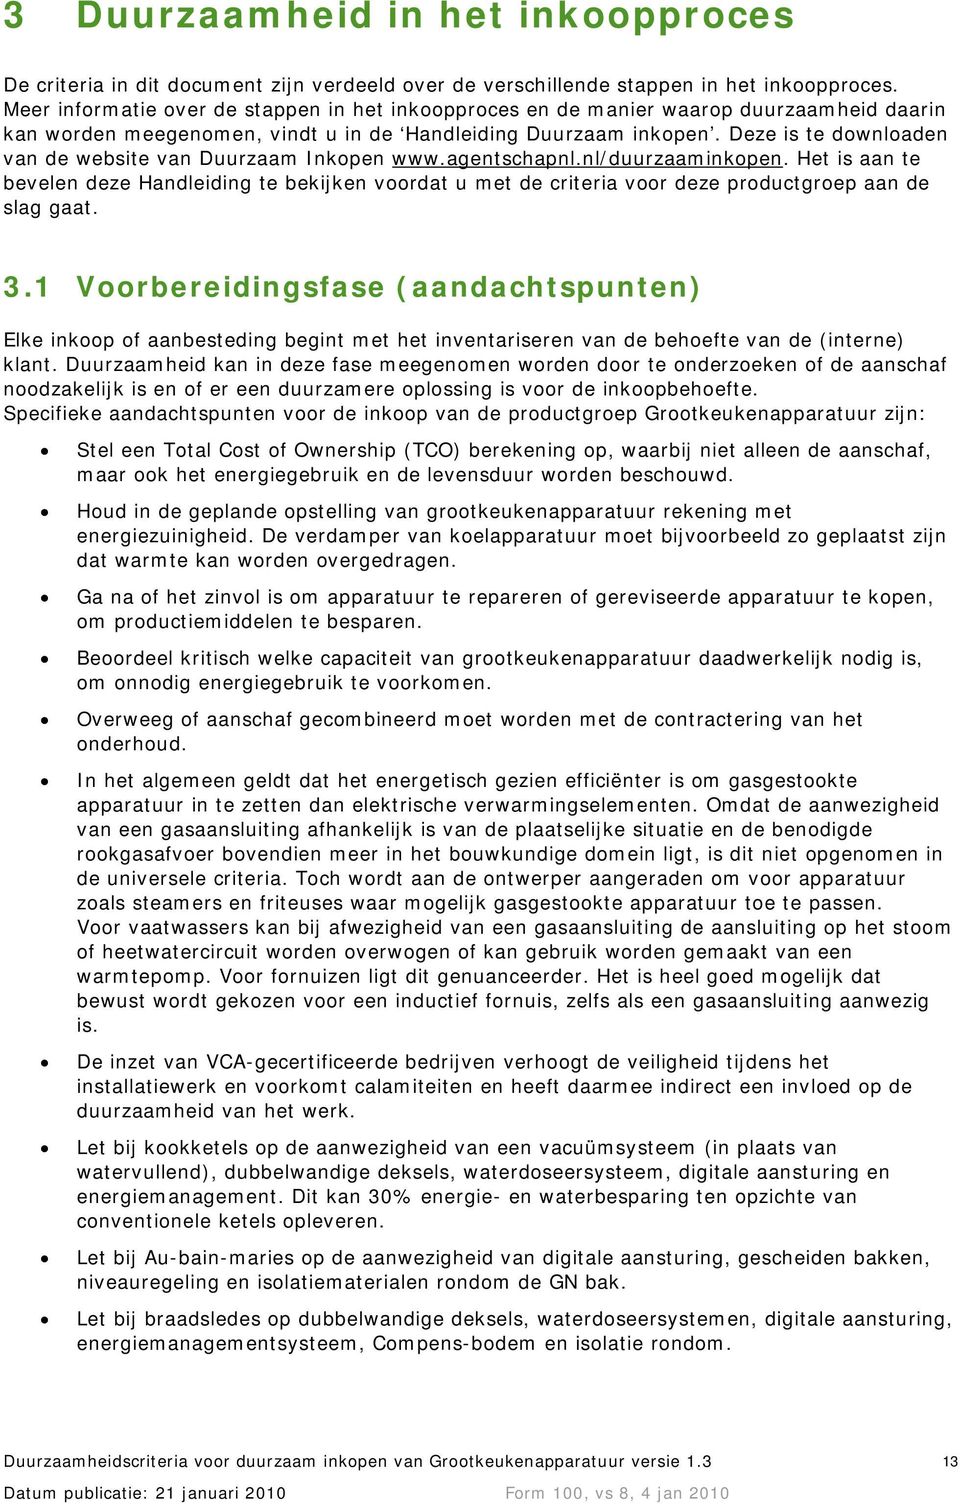 Deze is te downloaden van de website van Duurzaam Inkopen www.agentschapnl.nl/duurzaaminkopen.